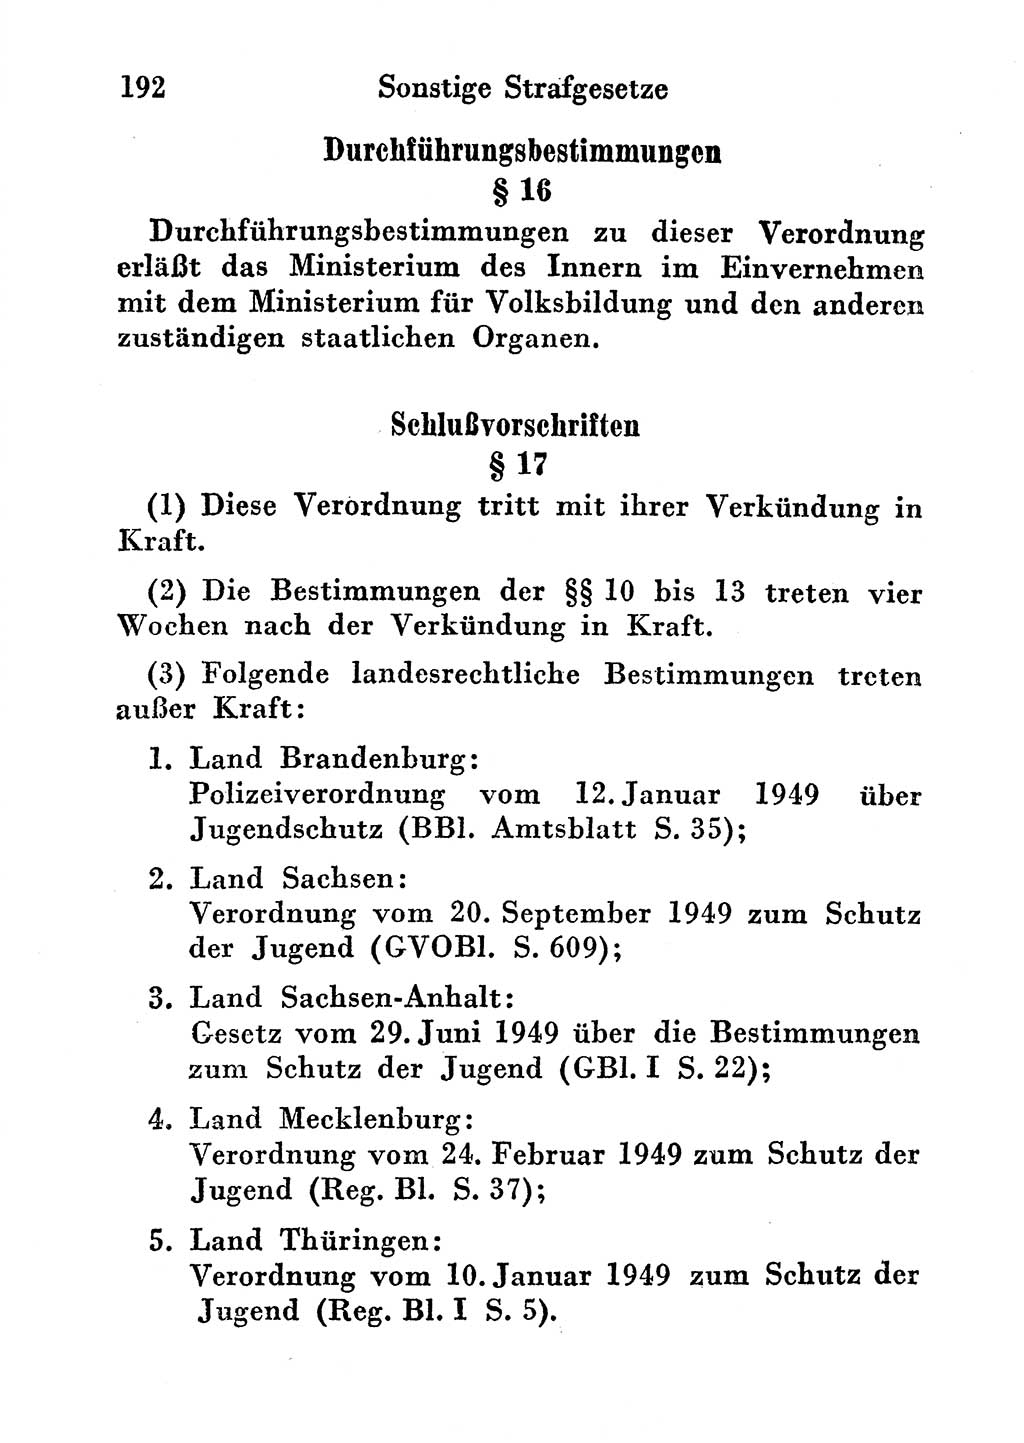 Strafgesetzbuch (StGB) und andere Strafgesetze [Deutsche Demokratische Republik (DDR)] 1956, Seite 192 (StGB Strafges. DDR 1956, S. 192)